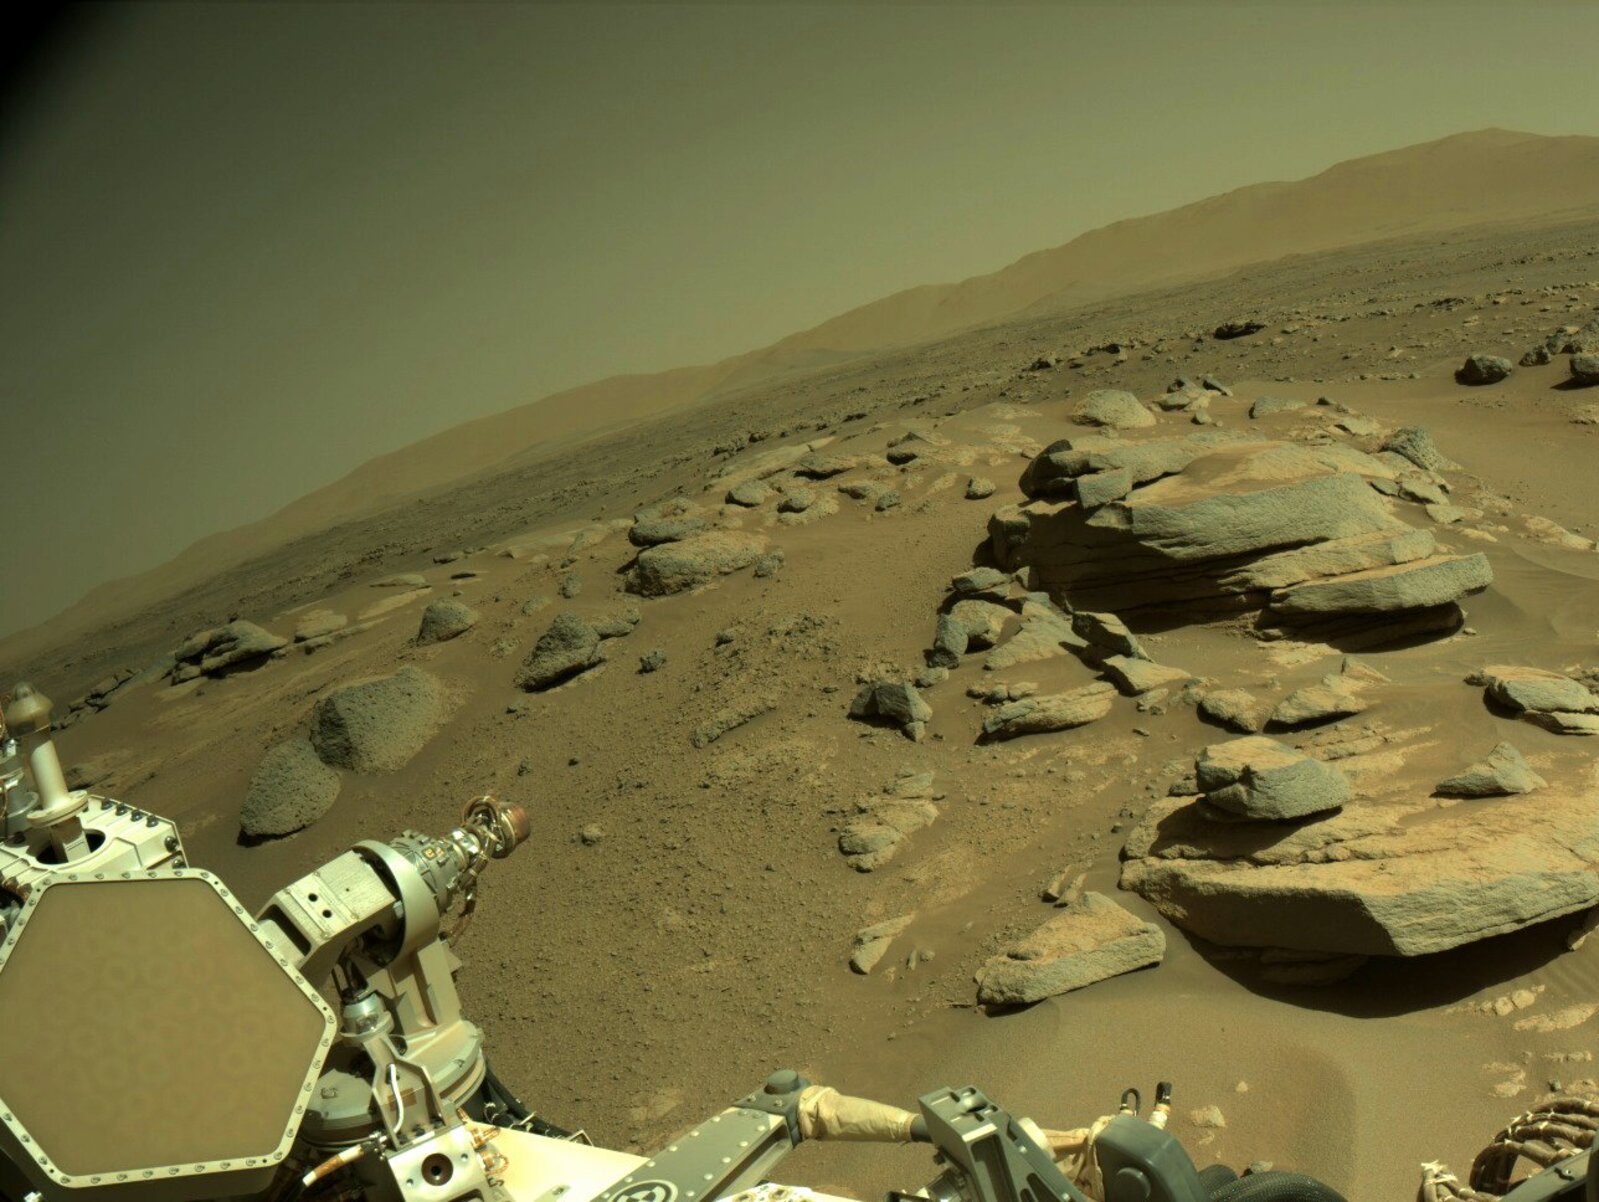 Et un 14e vol réussi au-dessus de Mars ! Après plusieurs semaines de silence en raison de l'orbite de la planète, le rover martien Perseverance et le drone Ingenuity se sont remis en activité.